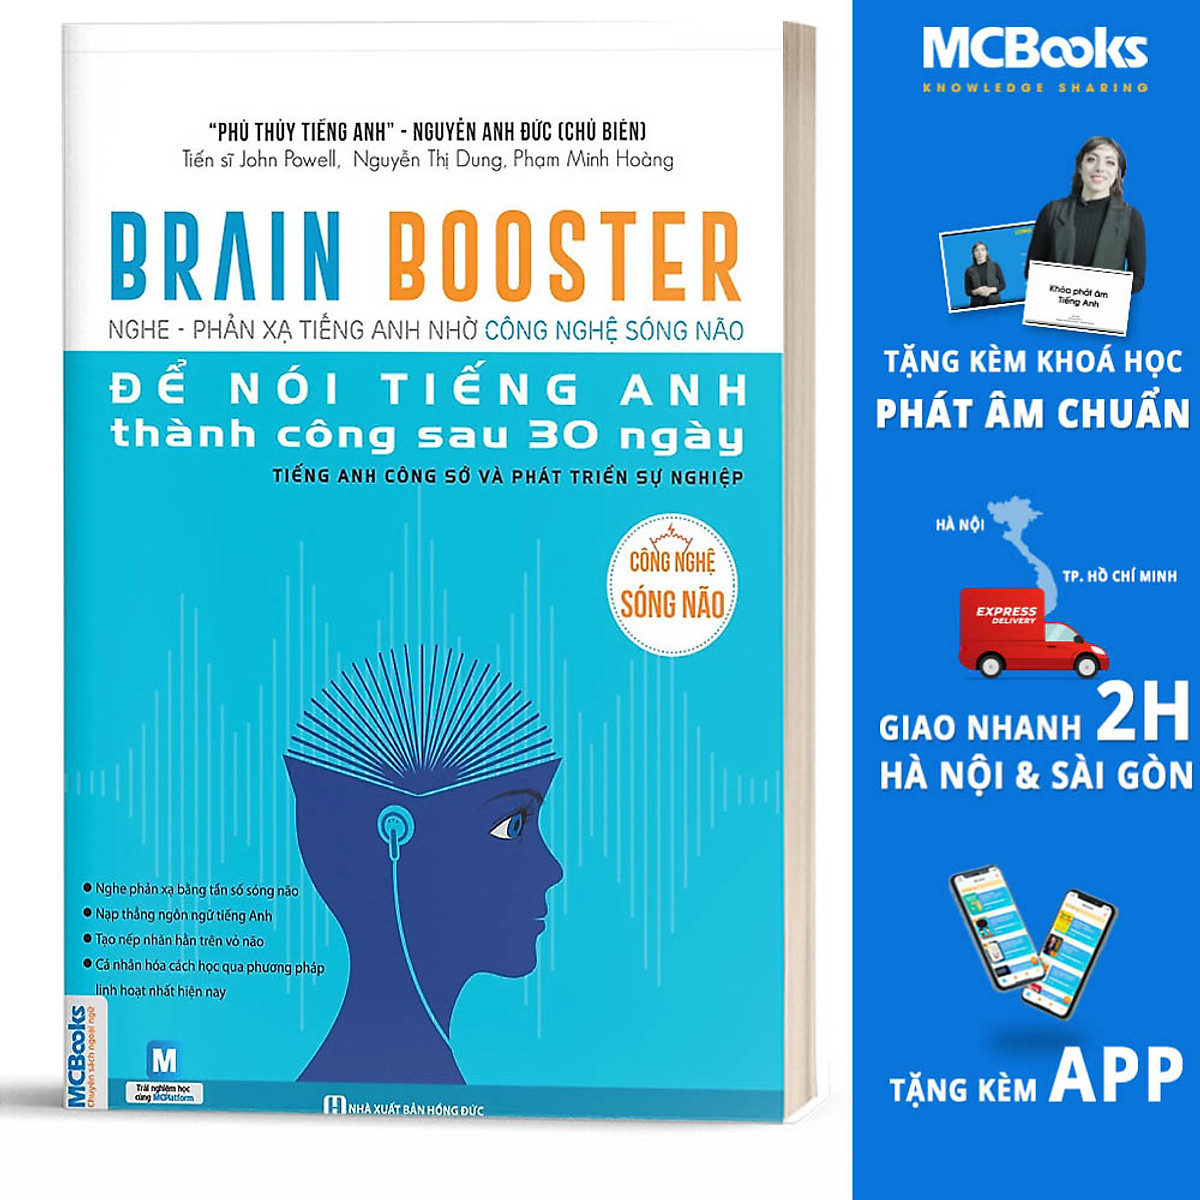 Brain Booster Nghe Phản Xạ Tiếng Anh Nhờ Công Nghệ Sóng Não - Tiếng Anh Phát Triển Sự Nghiệp (Học Kèm App MCBooks Application) (Tặng Ebooka Giá Trị) (Tặng Kèm Cây Viết Kute)